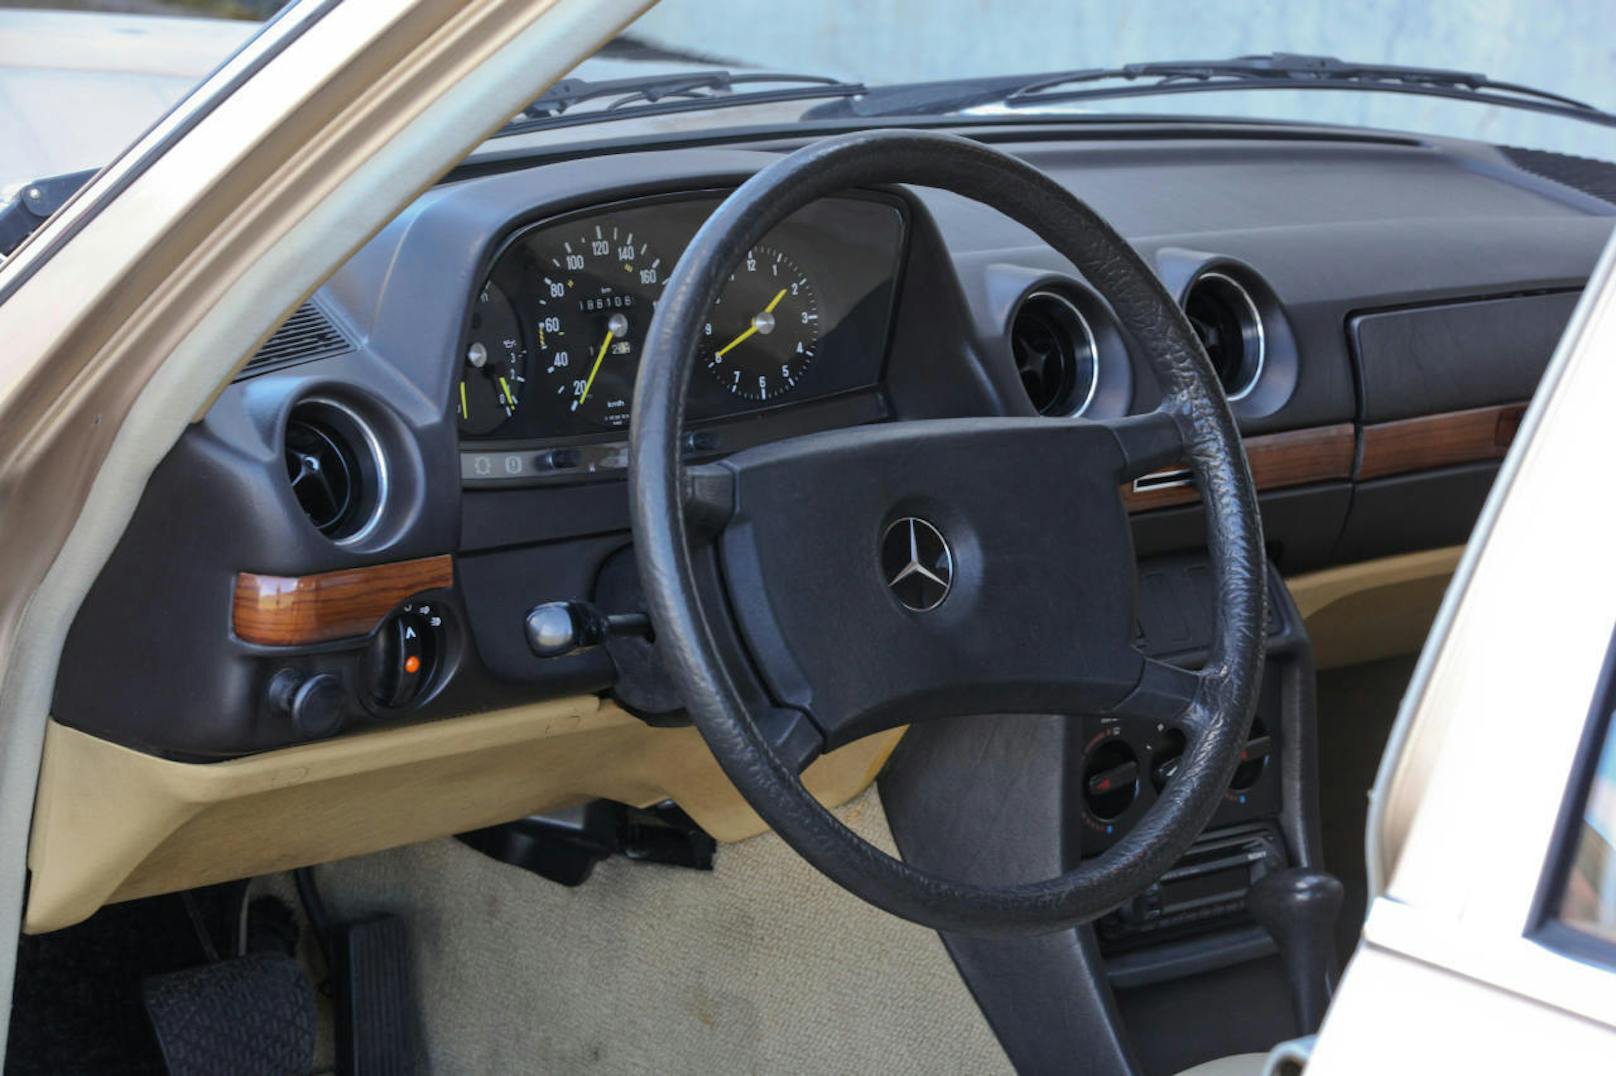 Das Armaturenbrett wurde 1978 von "Auto, Motor und Sport" als "Klassen-Vorbild" bezeichnet.